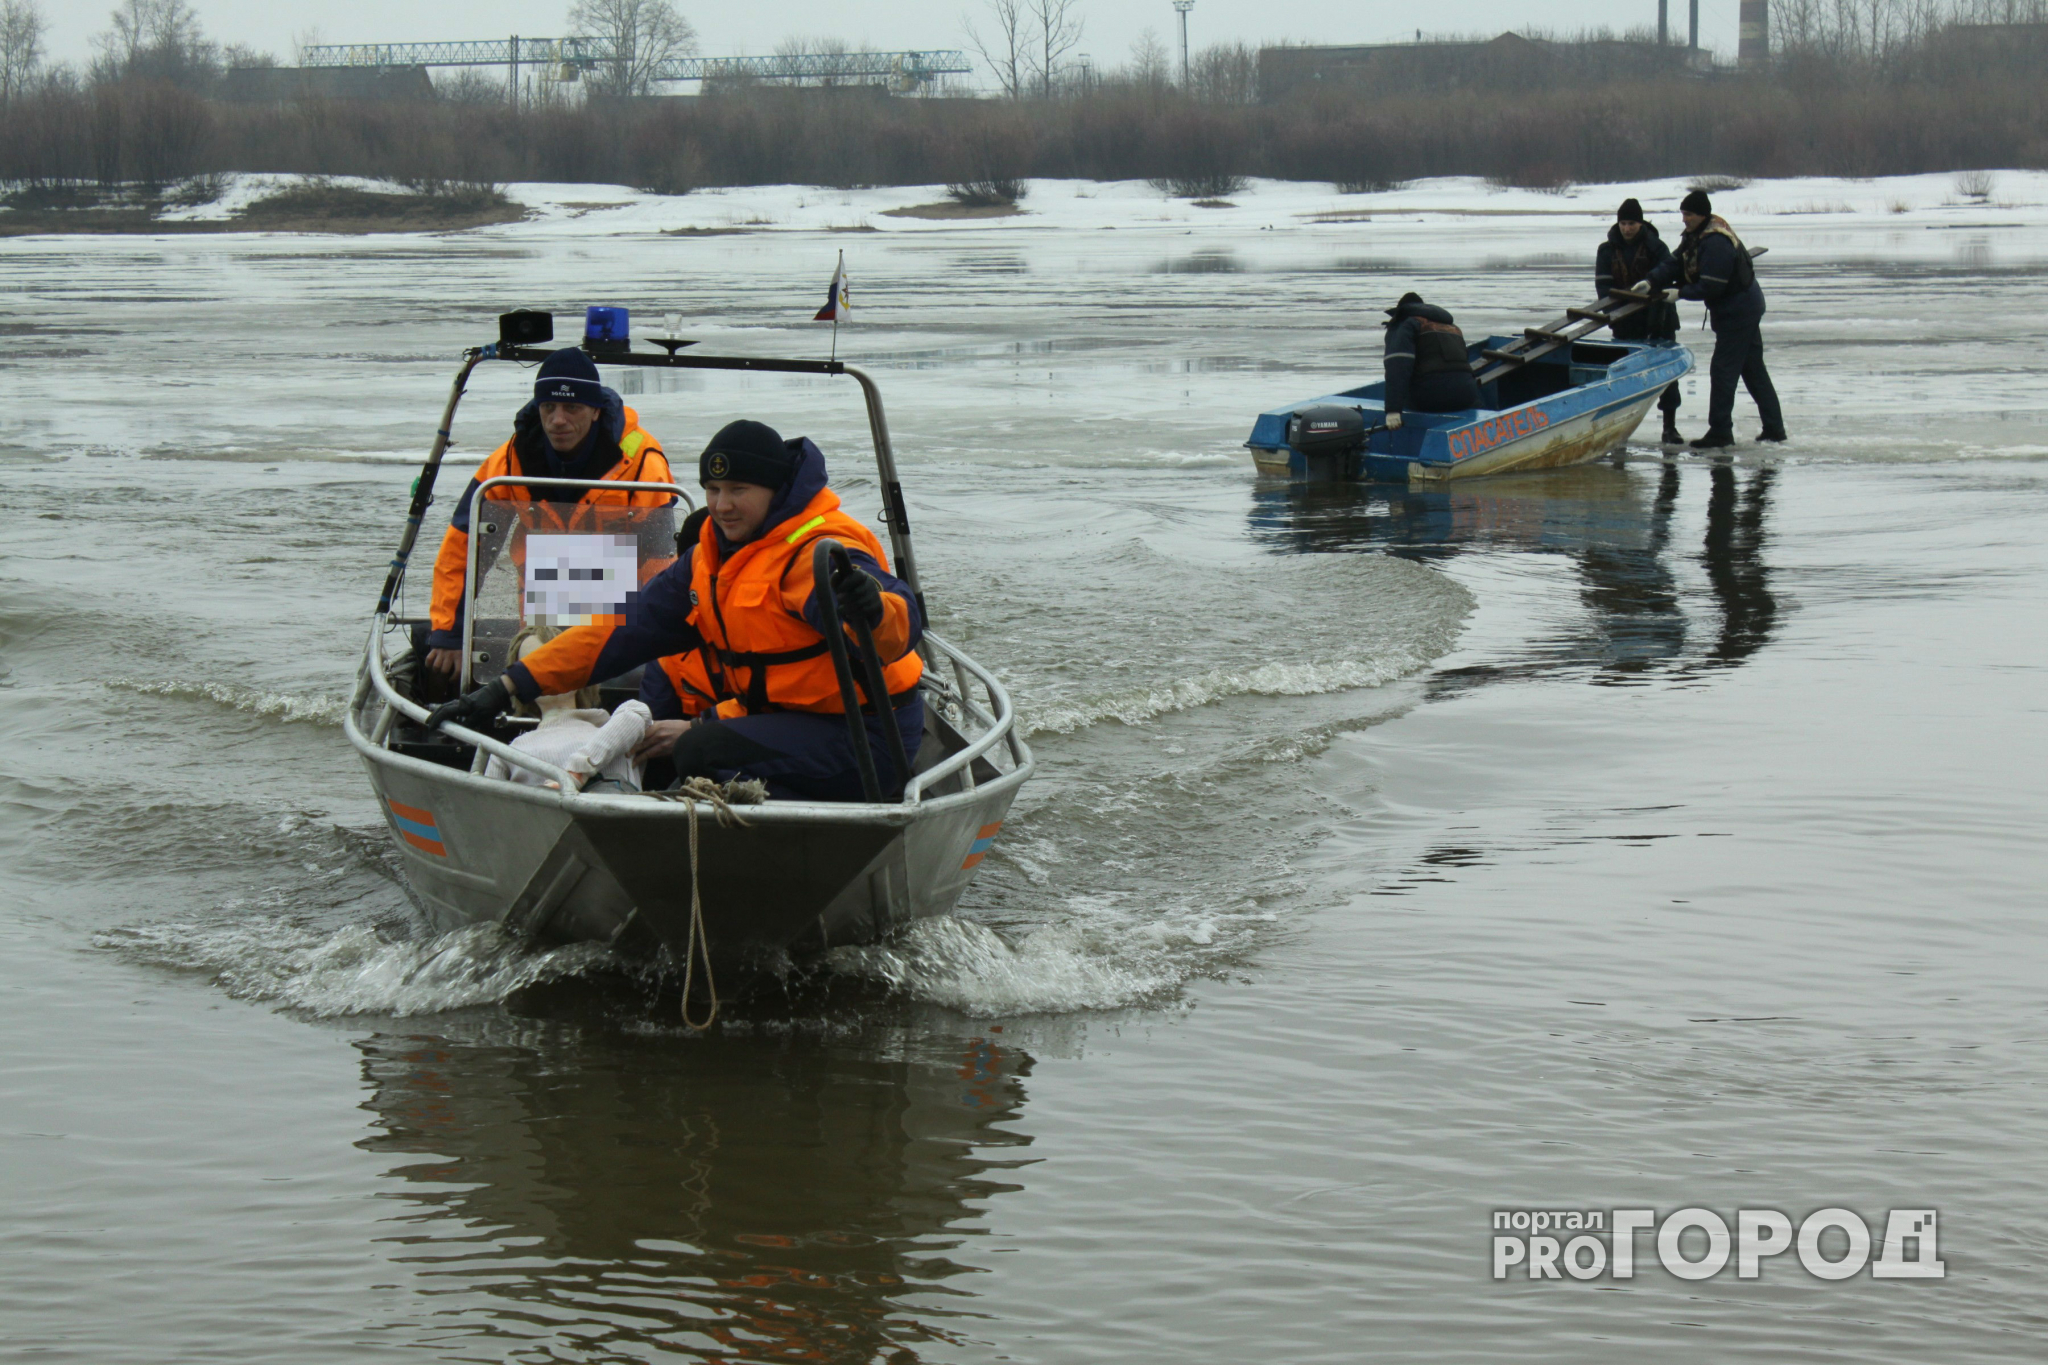 Чувашские спасатели вытащили из воды рыбаков-экстремалов в соседнем регионе